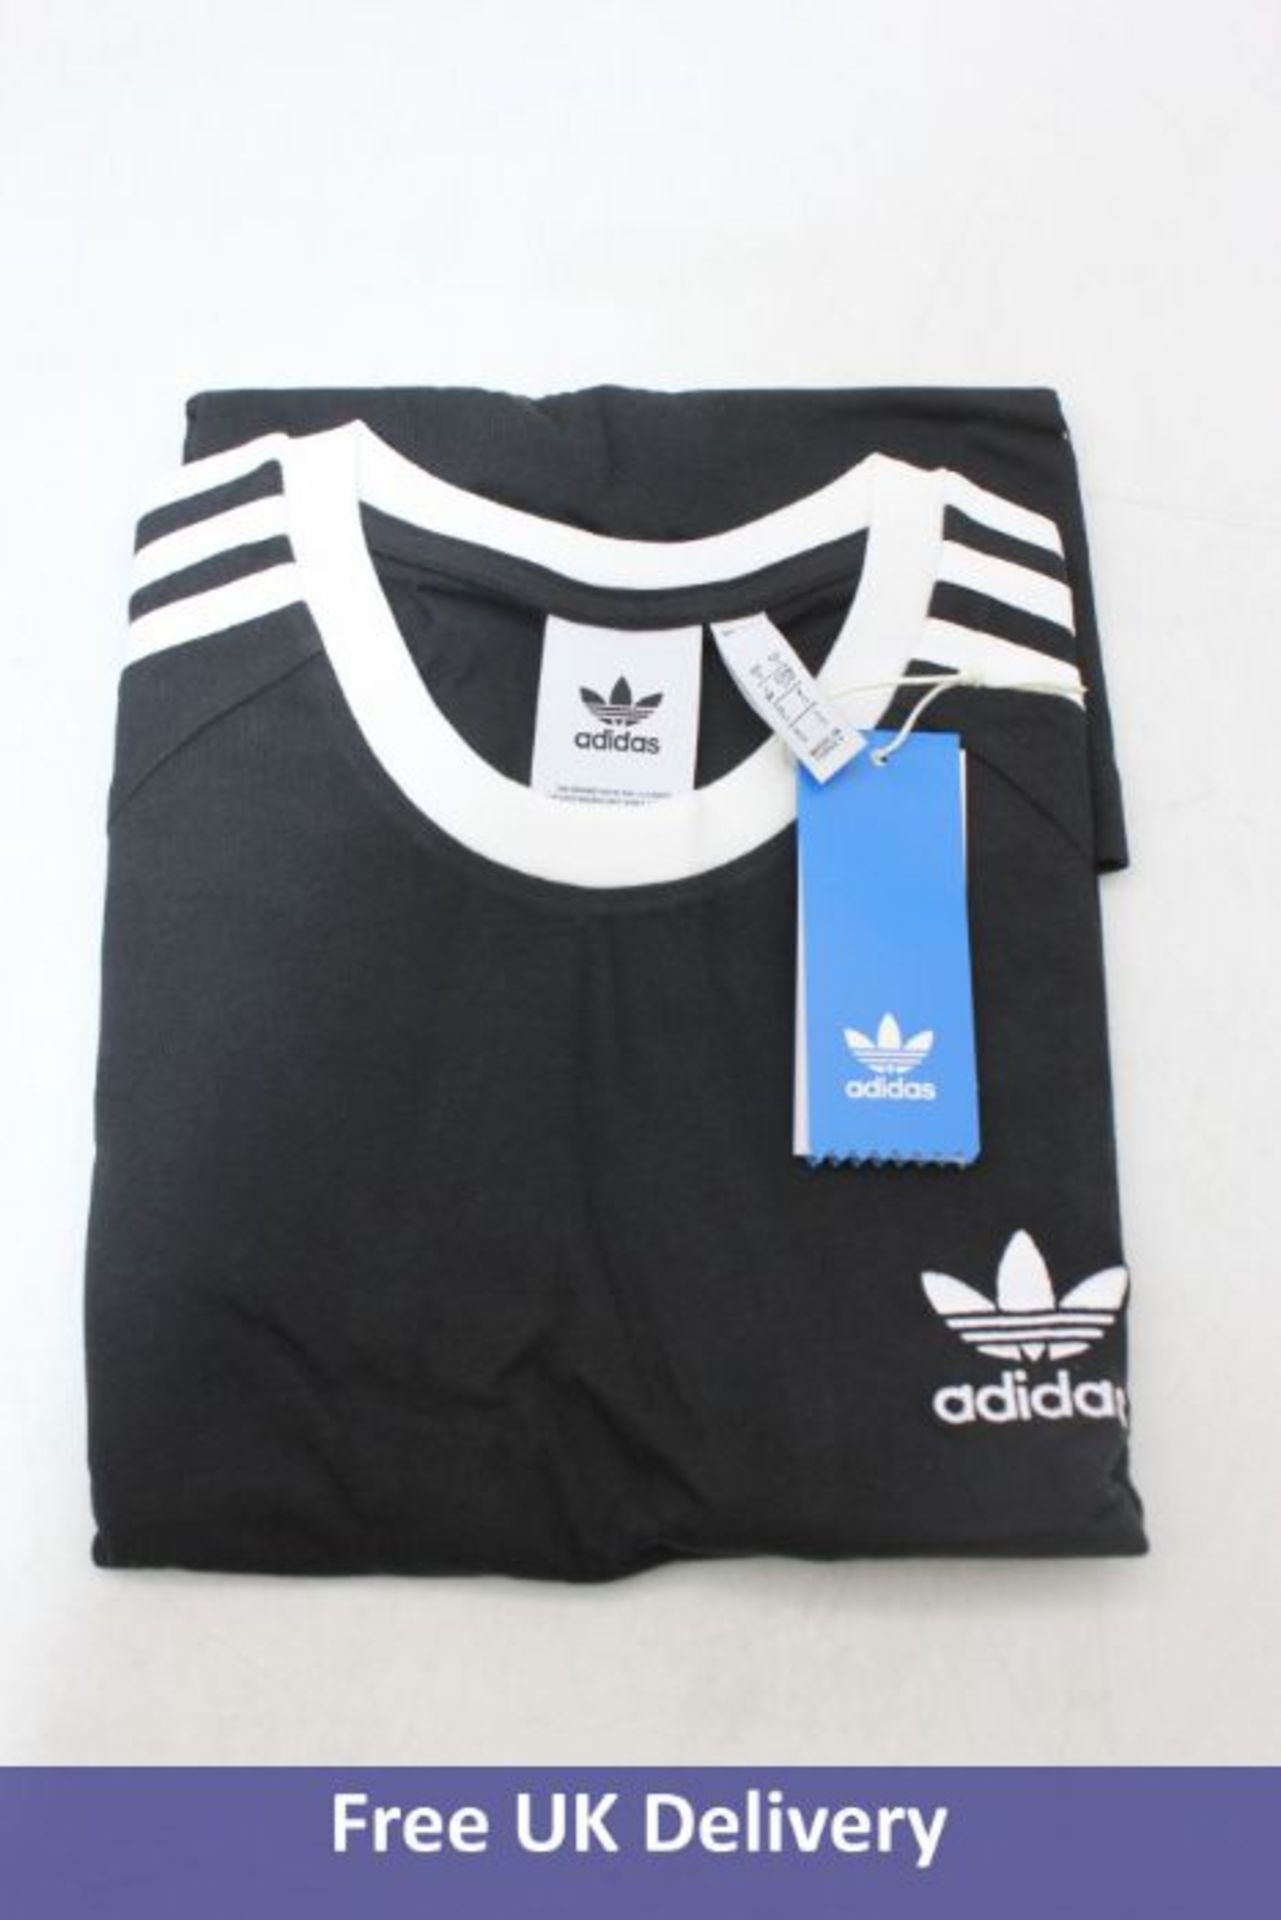 Five Adidas Originals Adicolor Classics 3-stripes Men's T-Shirts, Black, 2x S, 3x XL